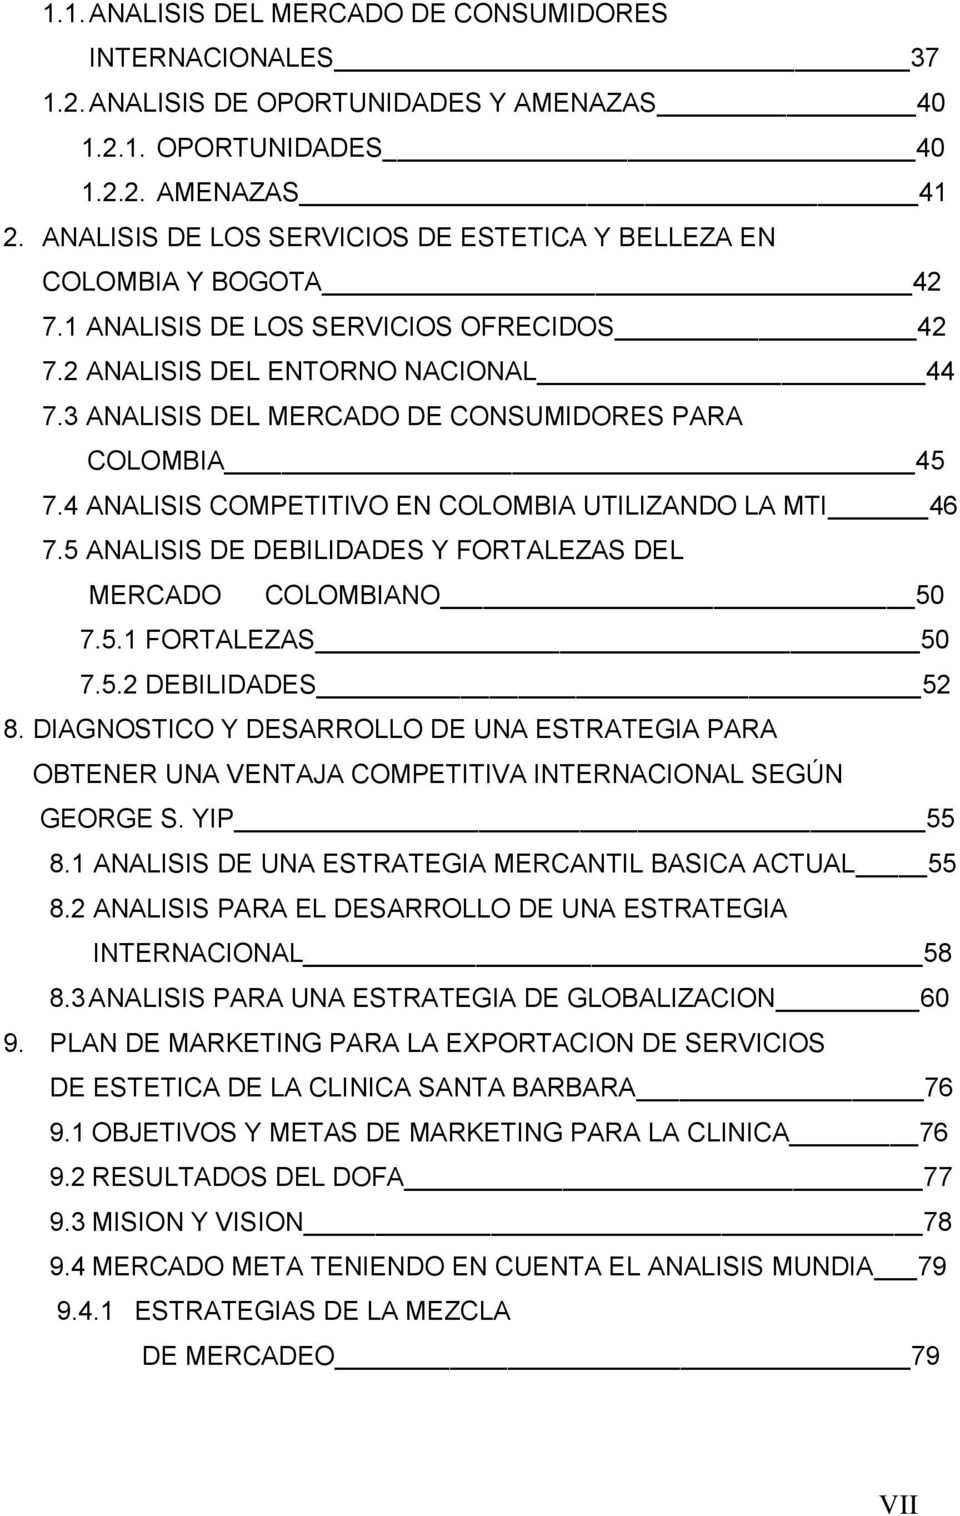 3 ANALISIS DEL MERCADO DE CONSUMIDORES PARA COLOMBIA 45 7.4 ANALISIS COMPETITIVO EN COLOMBIA UTILIZANDO LA MTI 46 7.5 ANALISIS DE DEBILIDADES Y FORTALEZAS DEL MERCADO COLOMBIANO 50 7.5.1 FORTALEZAS 50 7.